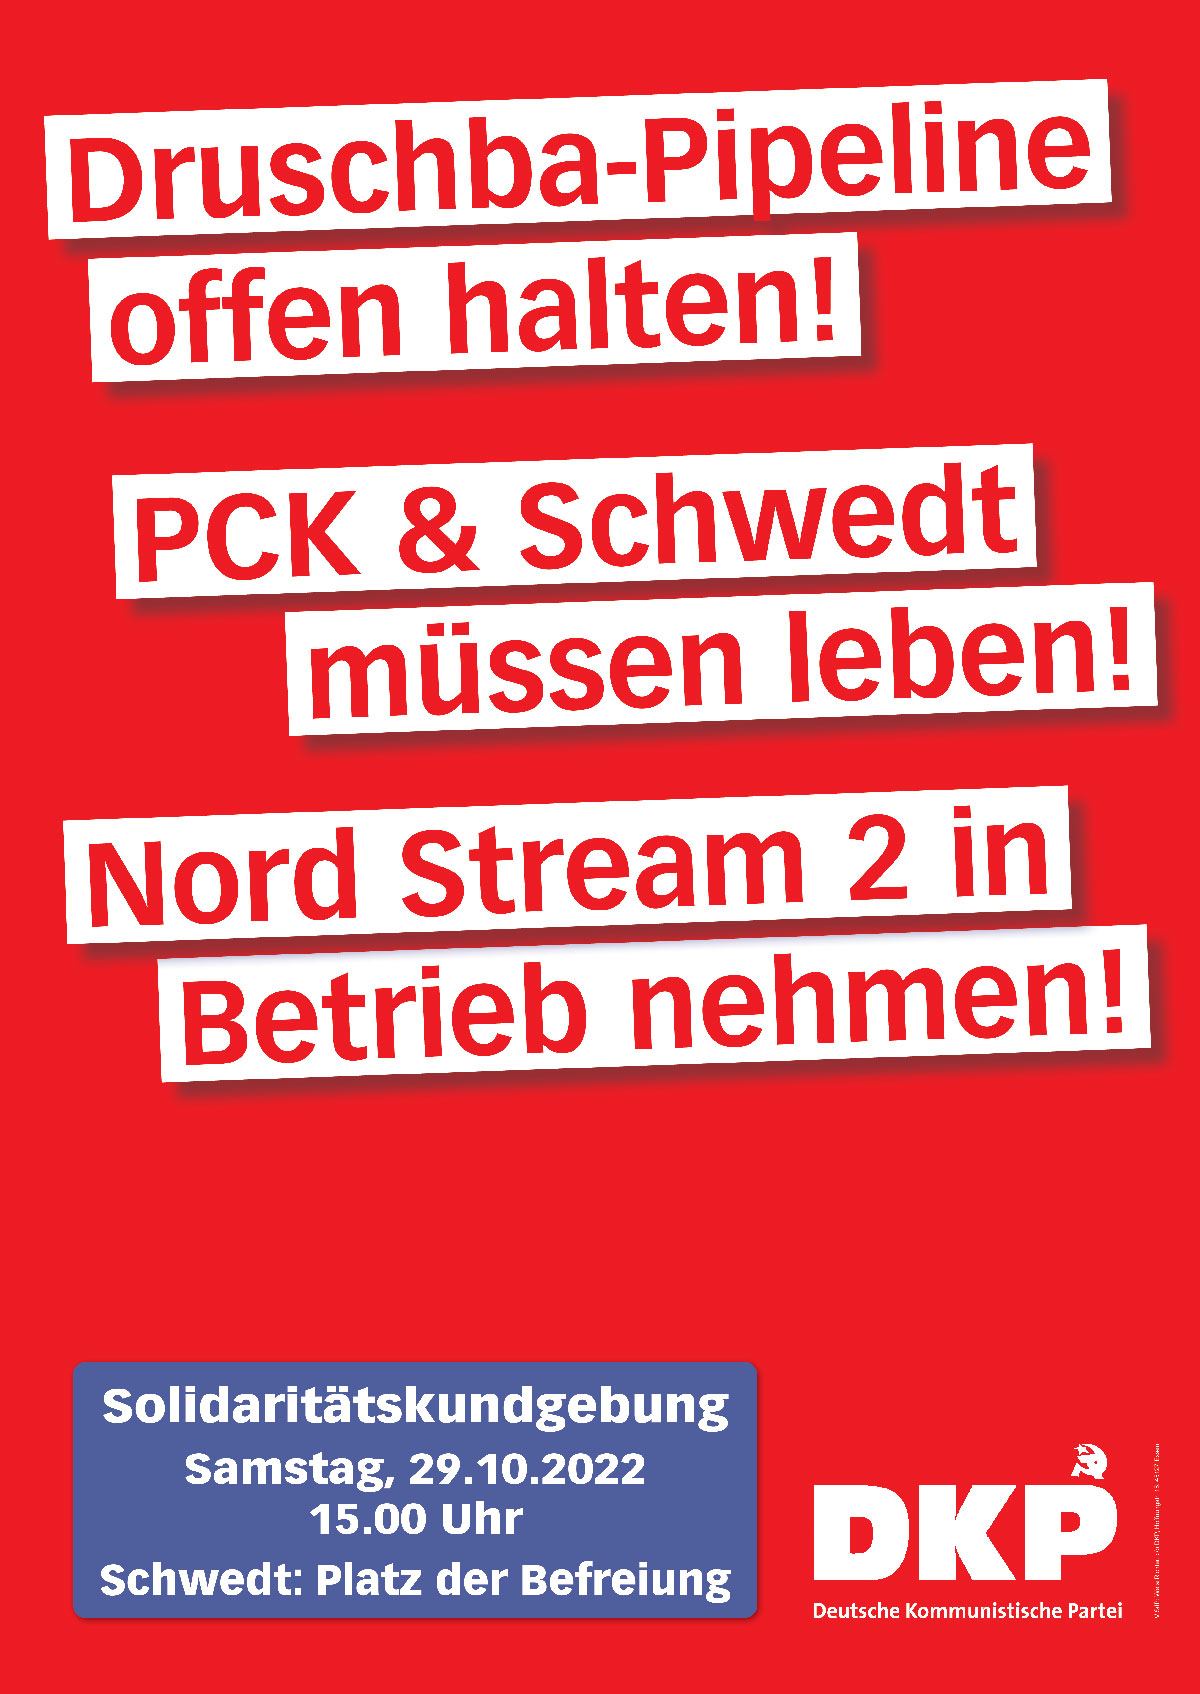 Plakat Schwedt - Soli-Kundgebung der DKP in Schwedt - DKP, Hans Bauer, Karin Hildebrandt, Schwedt, Solidarität, Stefan Natke - Aktion